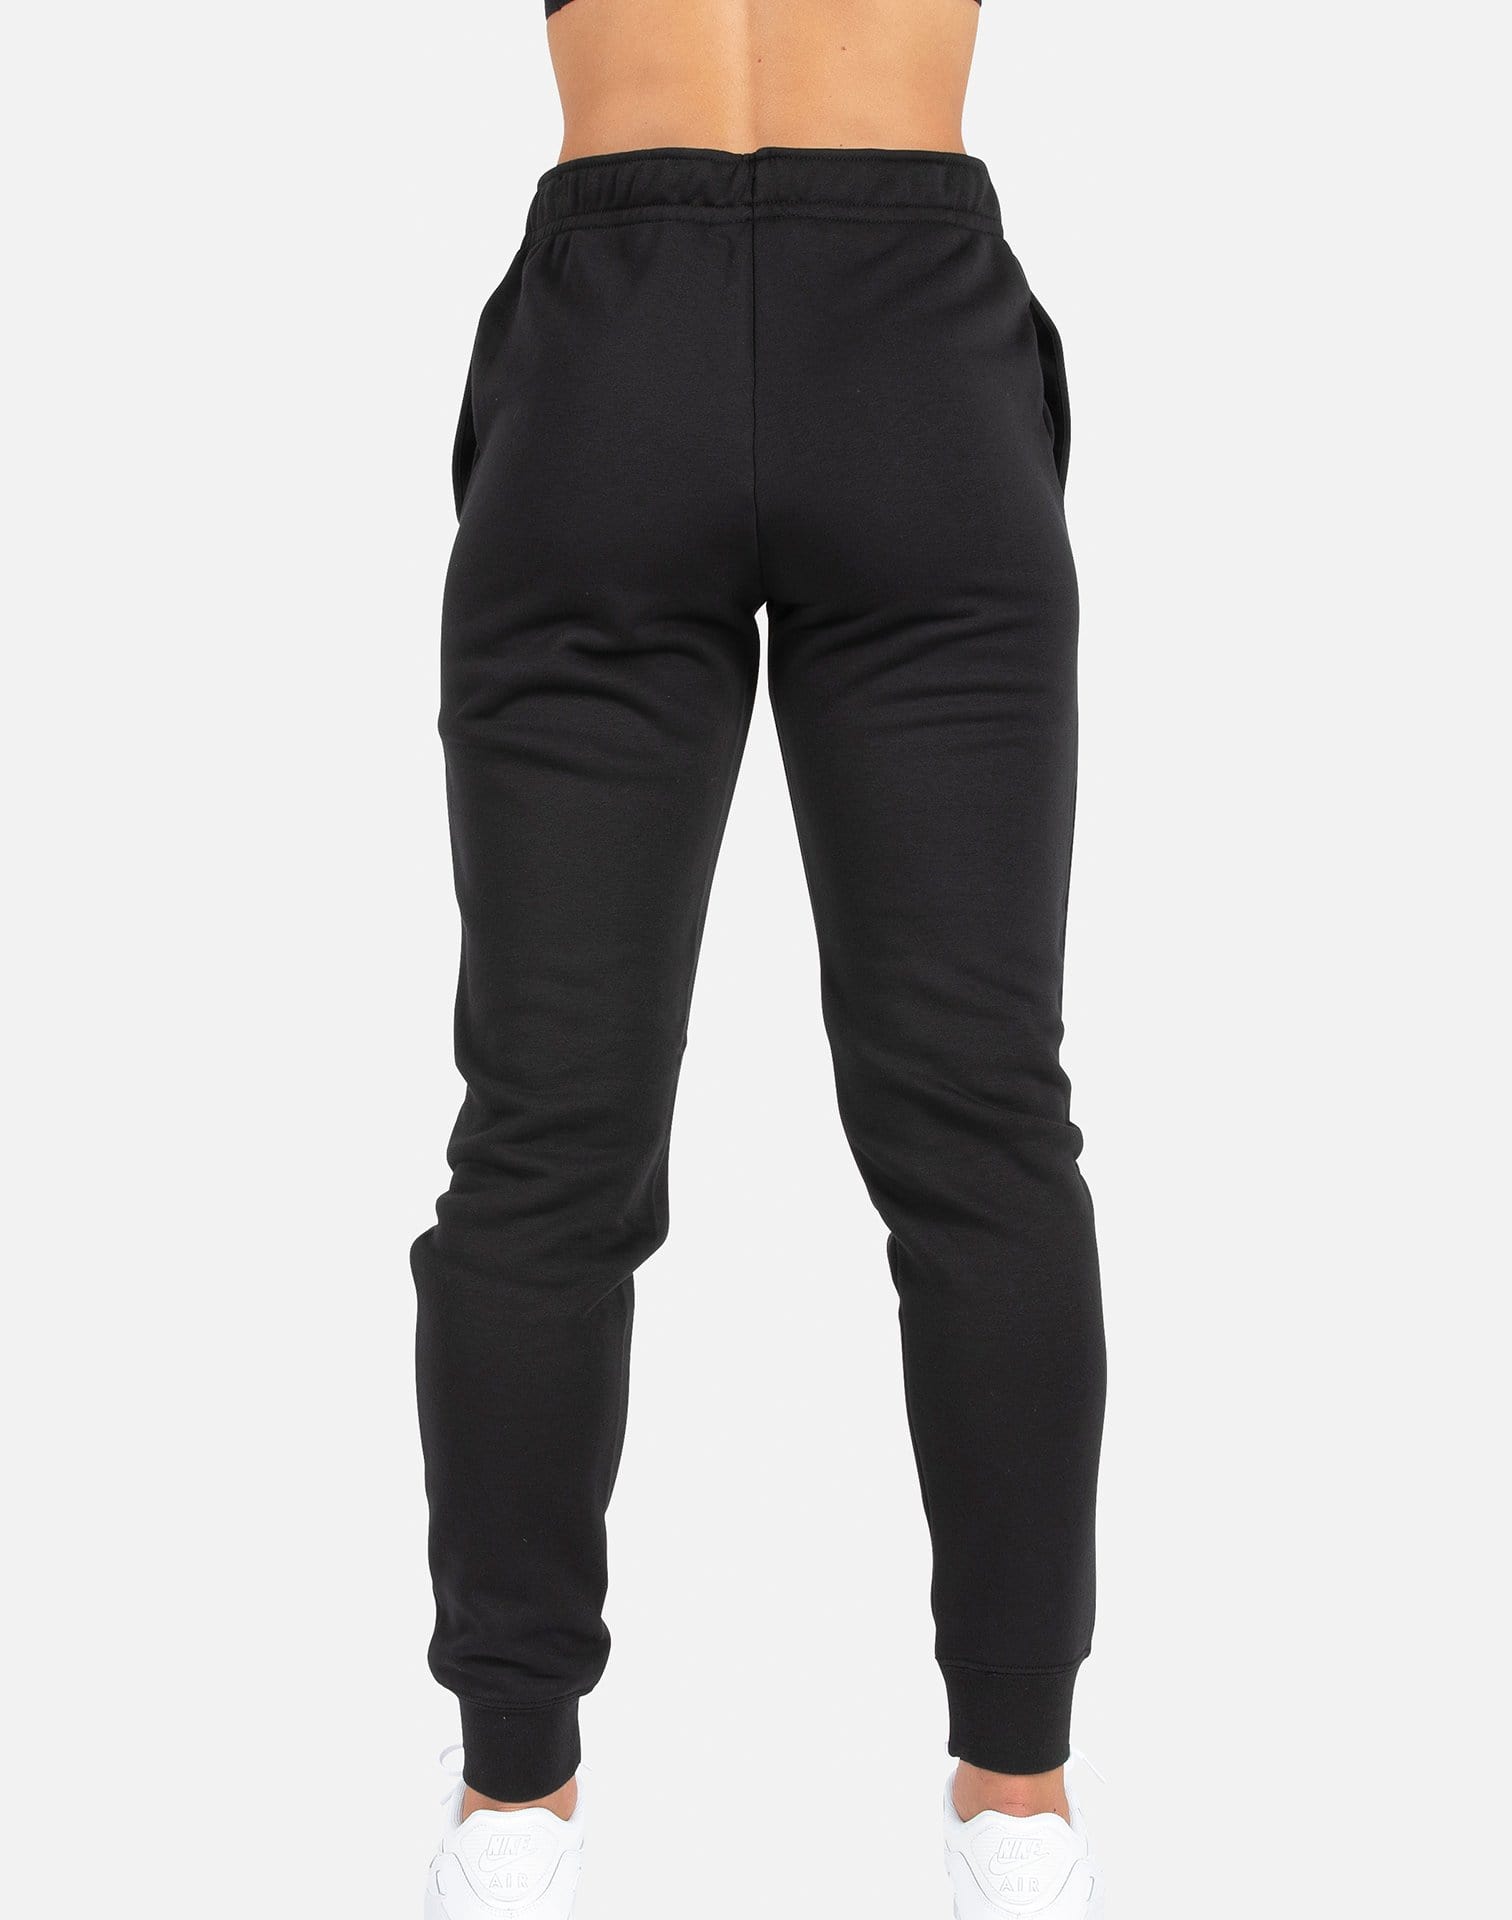 Nike NSW Women's Essential Fleece Pants